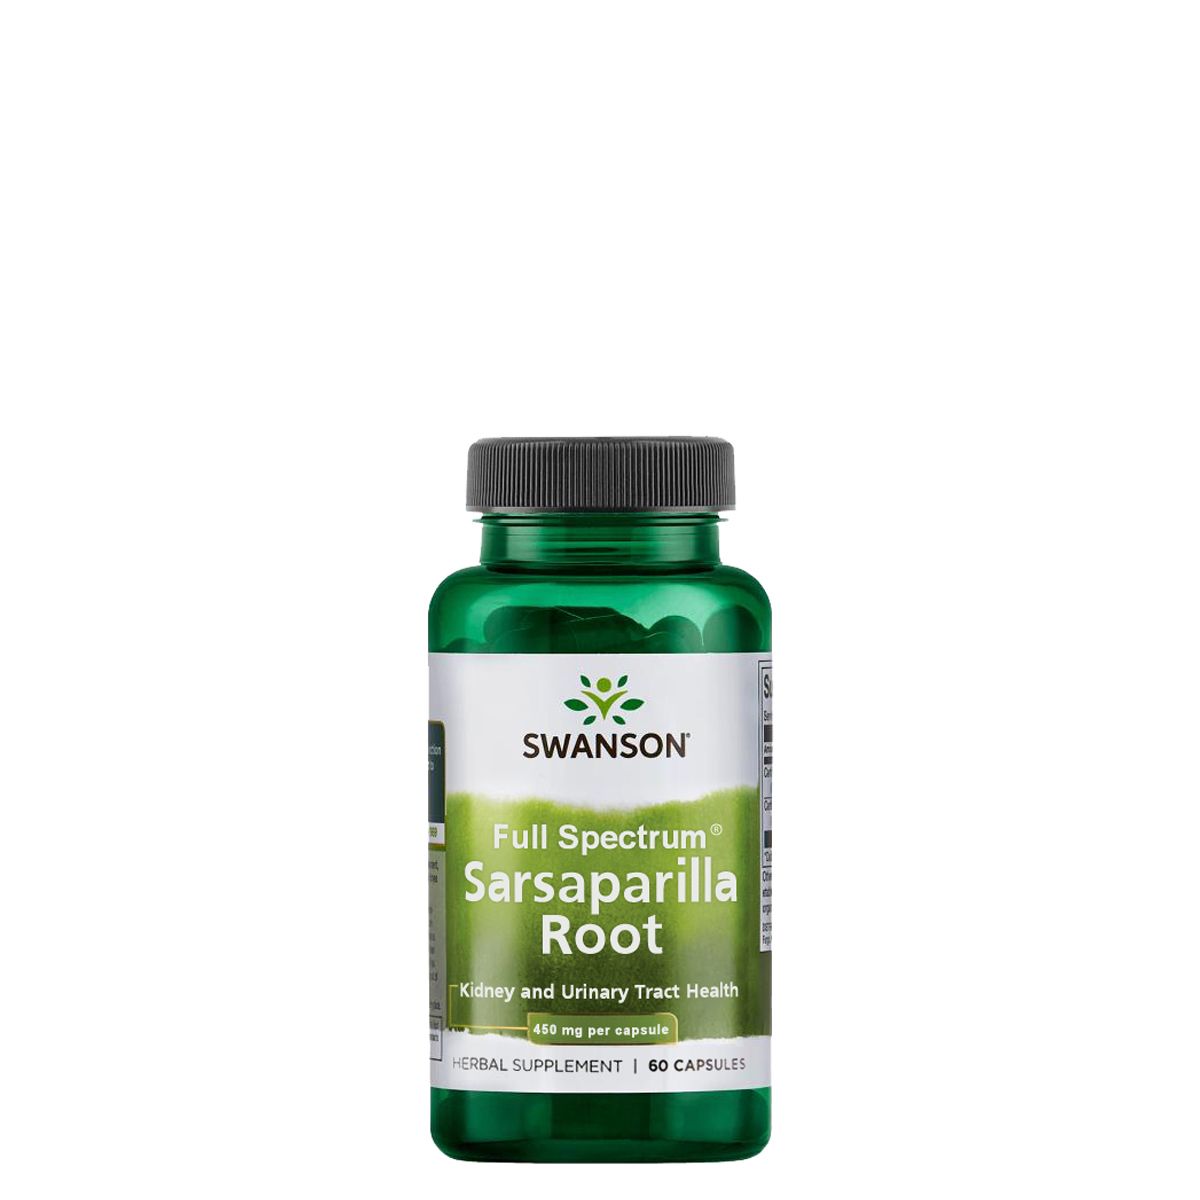 Sarsaparilla gyökér 450 mg, Swanson Full Spectrum Sarsaparilla Root, 60 kapszula